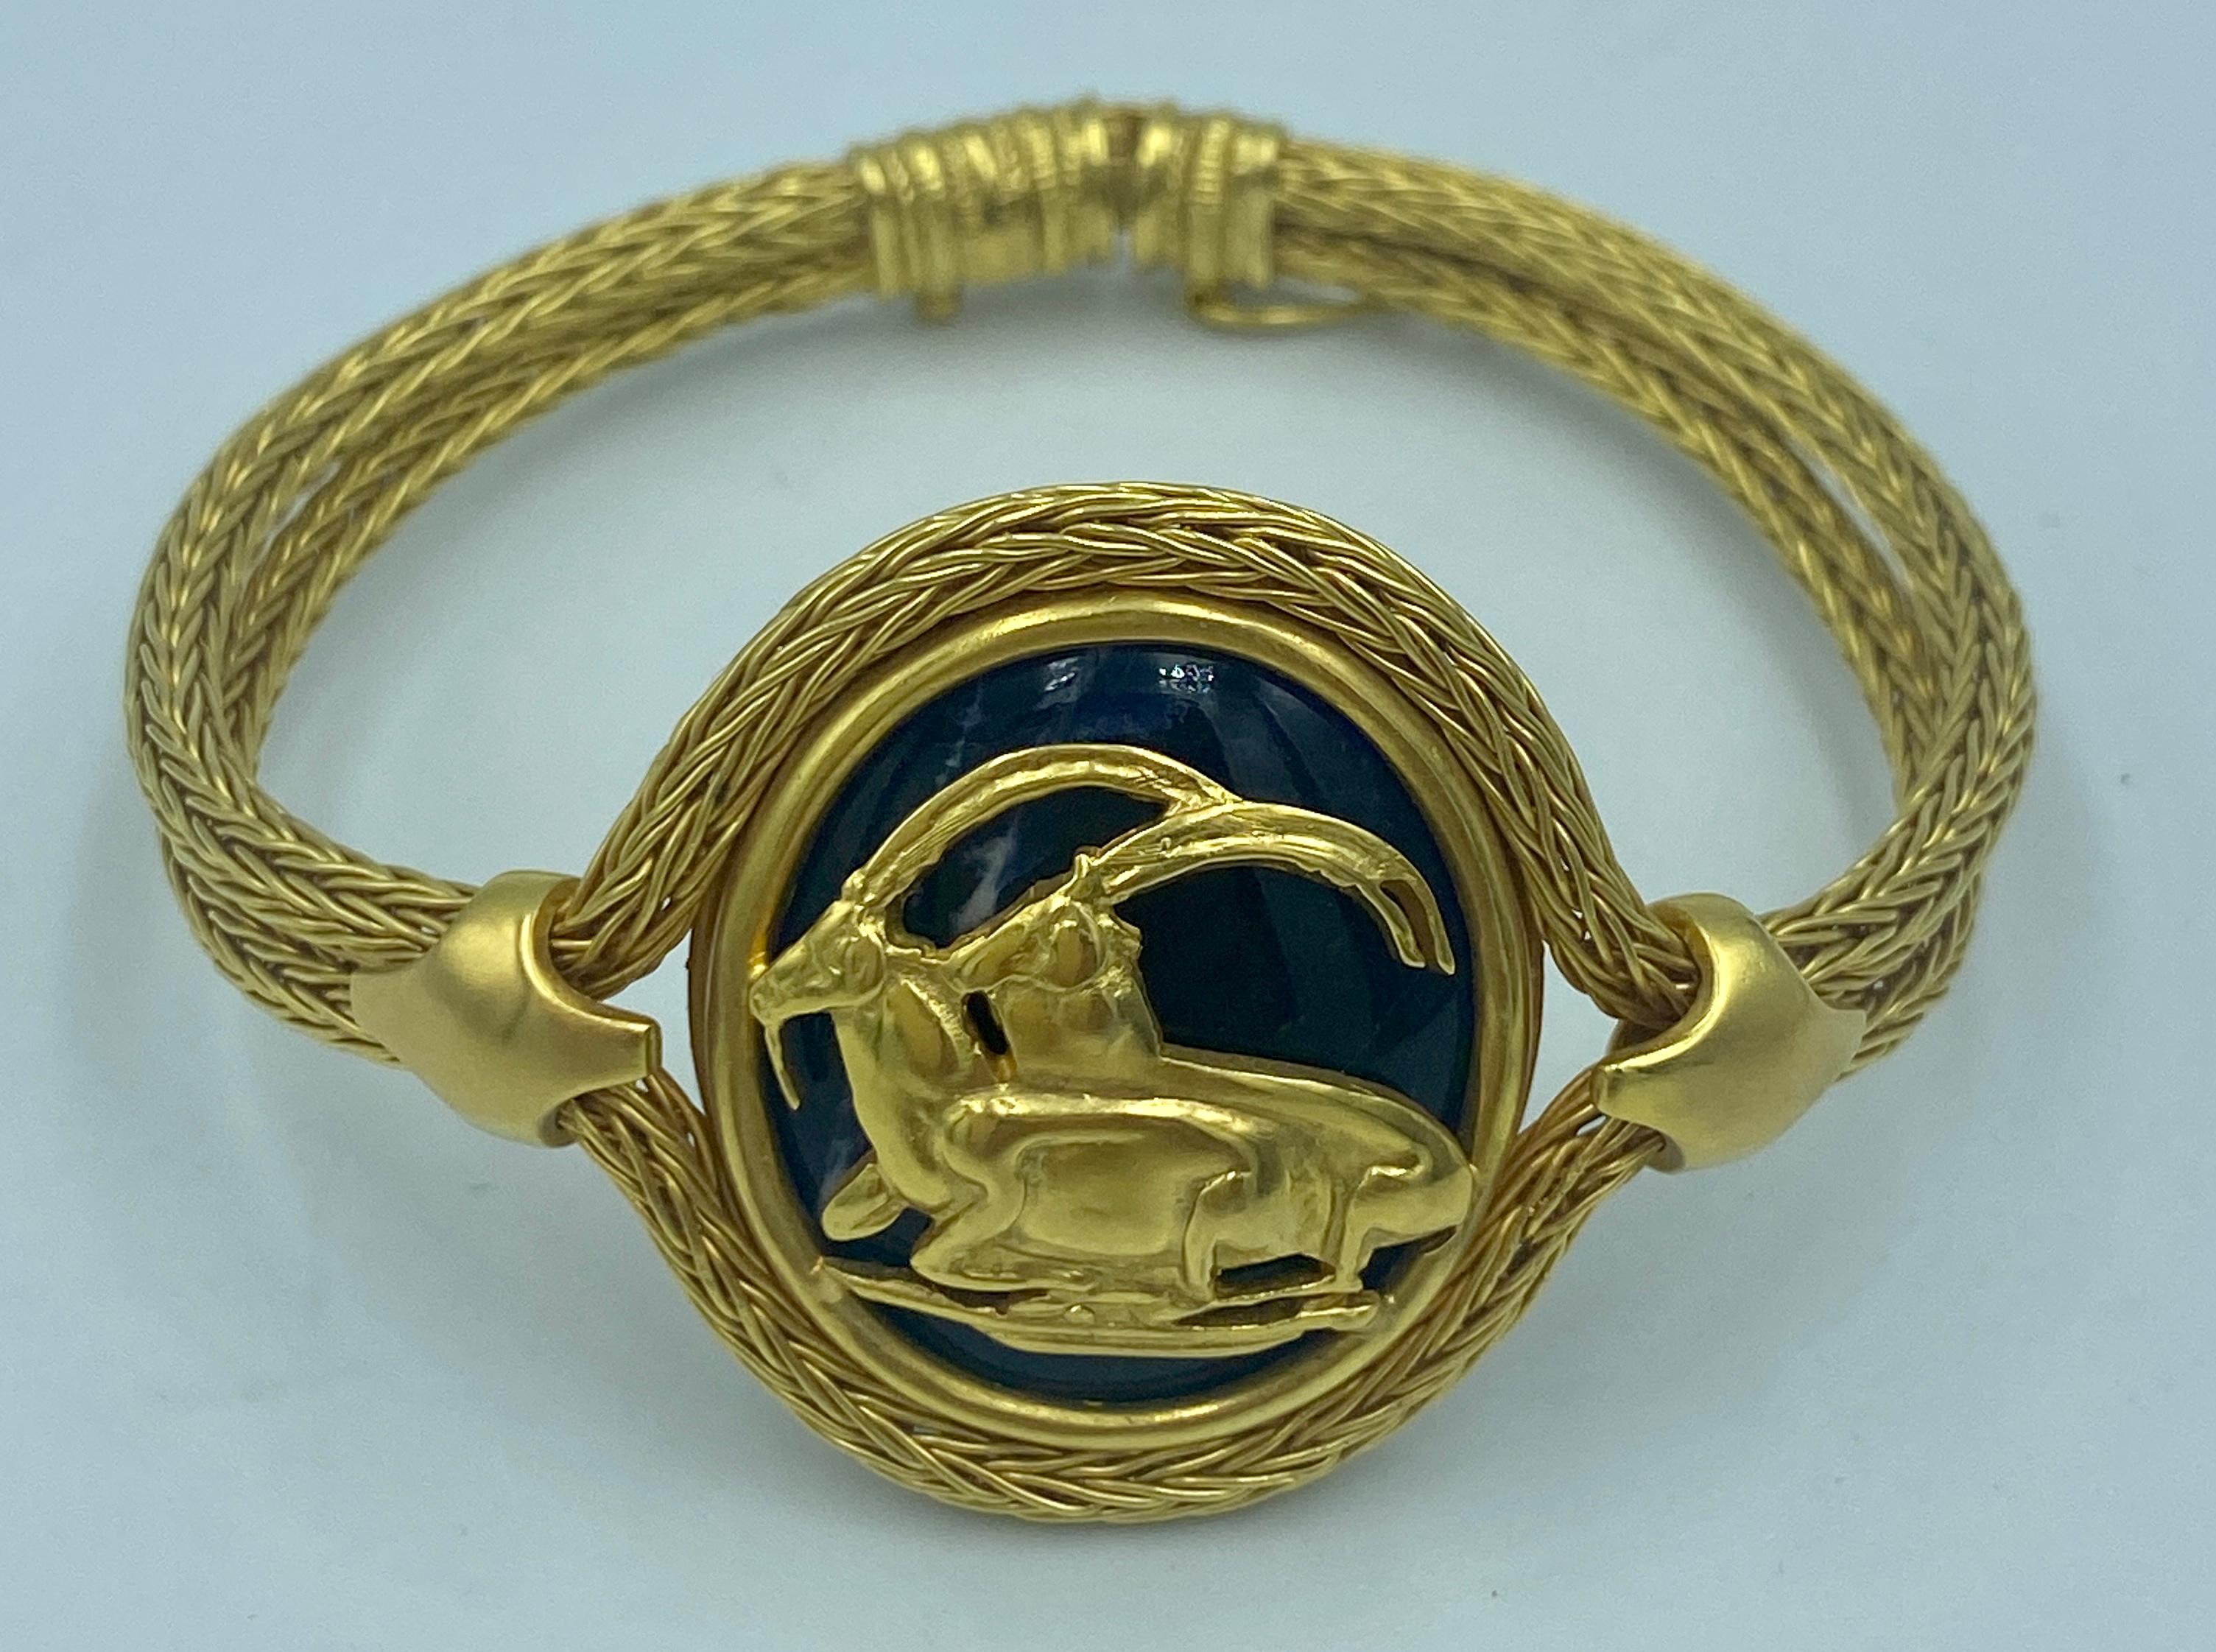 Ce magnifique bracelet Lalaounis des années 1970 a la forme d'un médaillon orné d'un motif de chèvre de montagne. Le médaillon est un lapis-lazuli cabochon entouré d'un fil d'or tissé 18k qui constitue le bracelet.

Ce bracelet, réalisé de manière